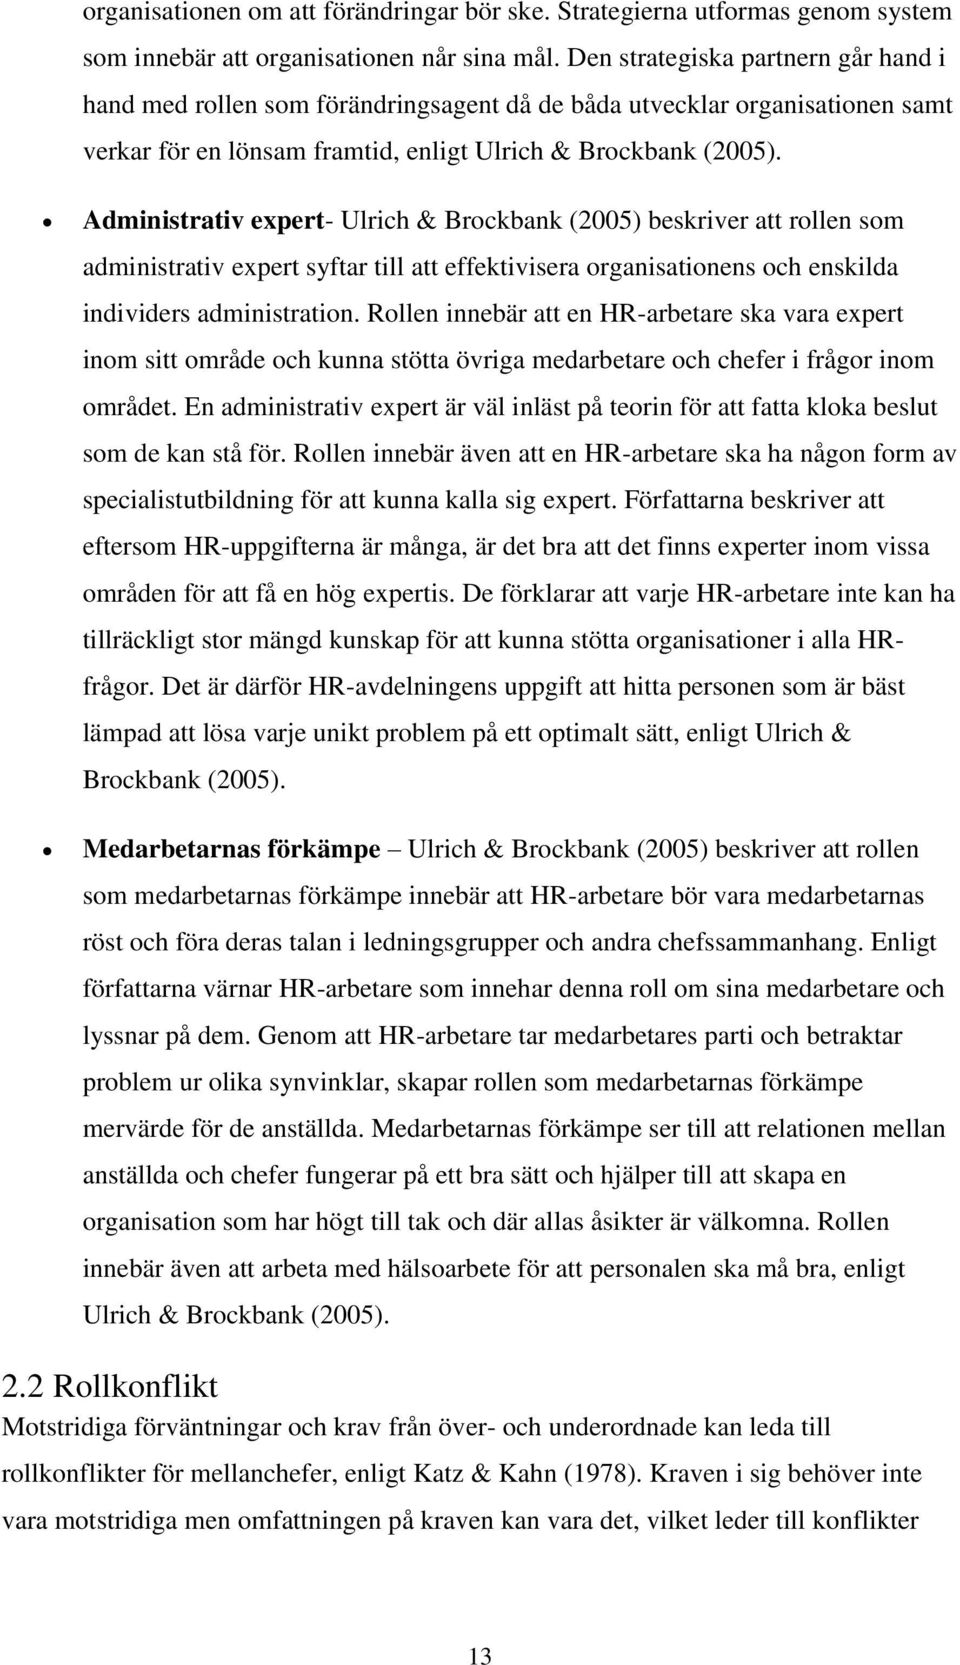 Administrativ expert- Ulrich & Brockbank (2005) beskriver att rollen som administrativ expert syftar till att effektivisera organisationens och enskilda individers administration.